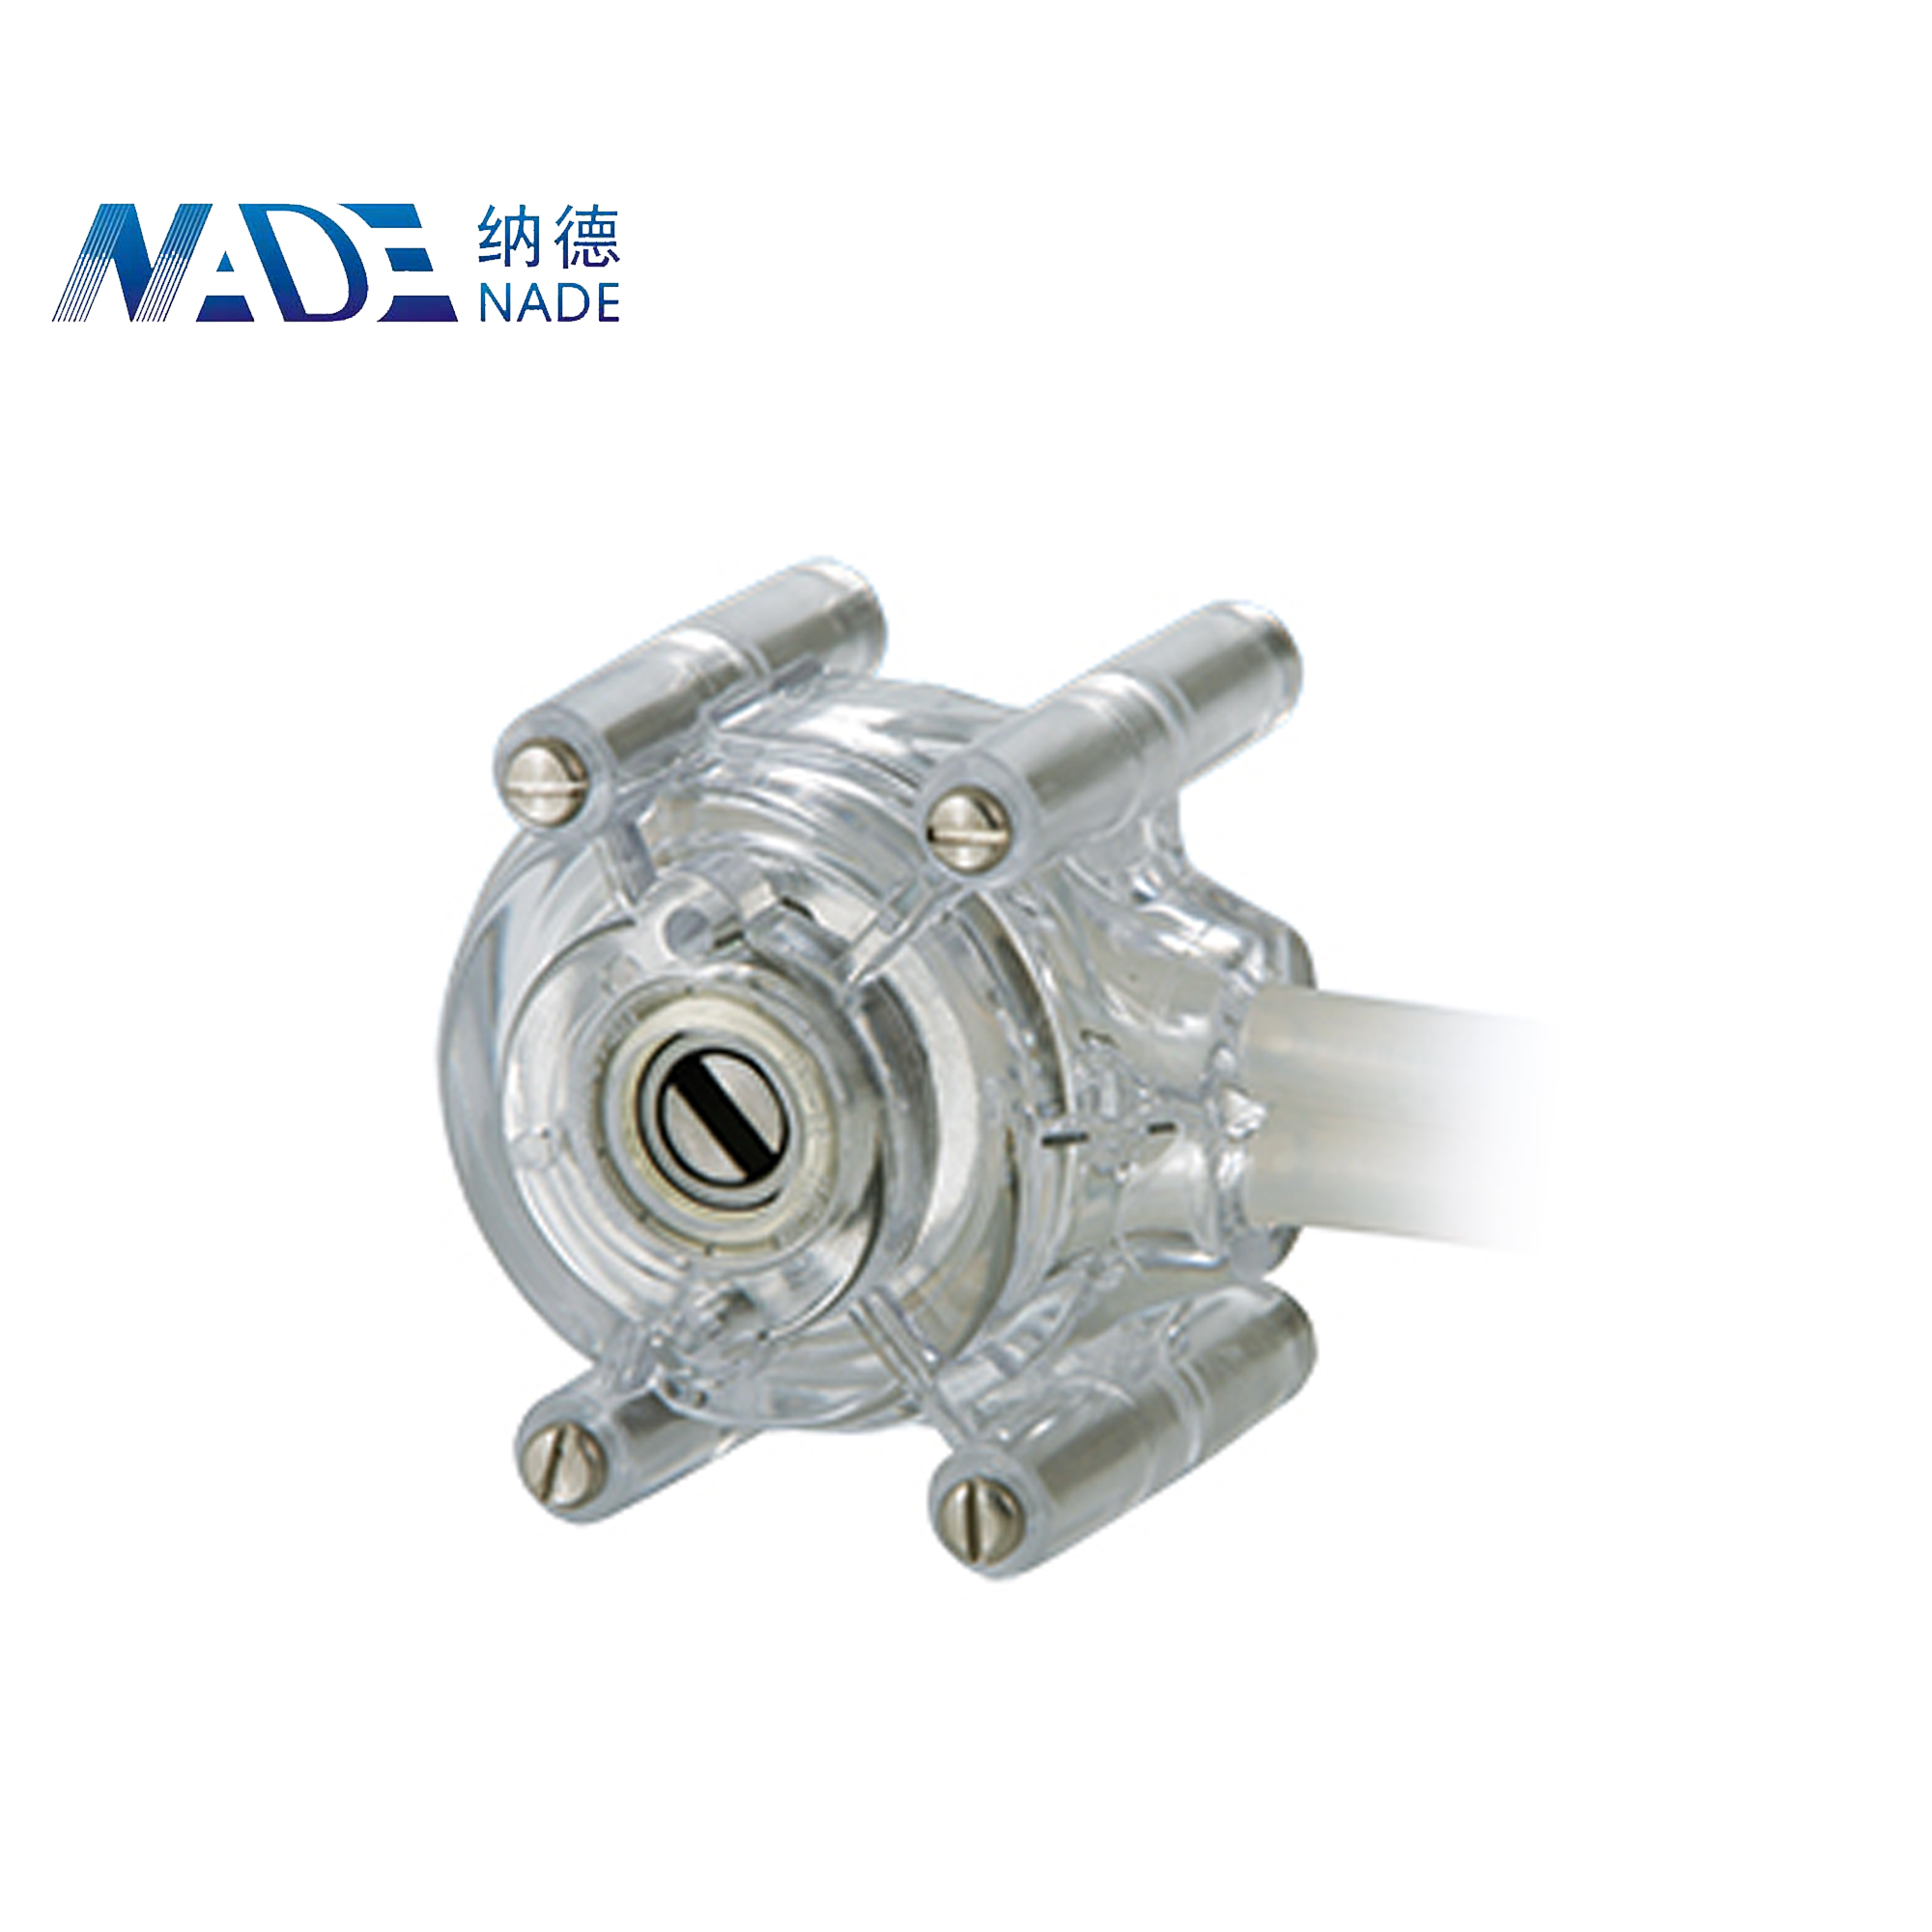 Nade Peristaltic pump Head BZ Series 1600ml/min